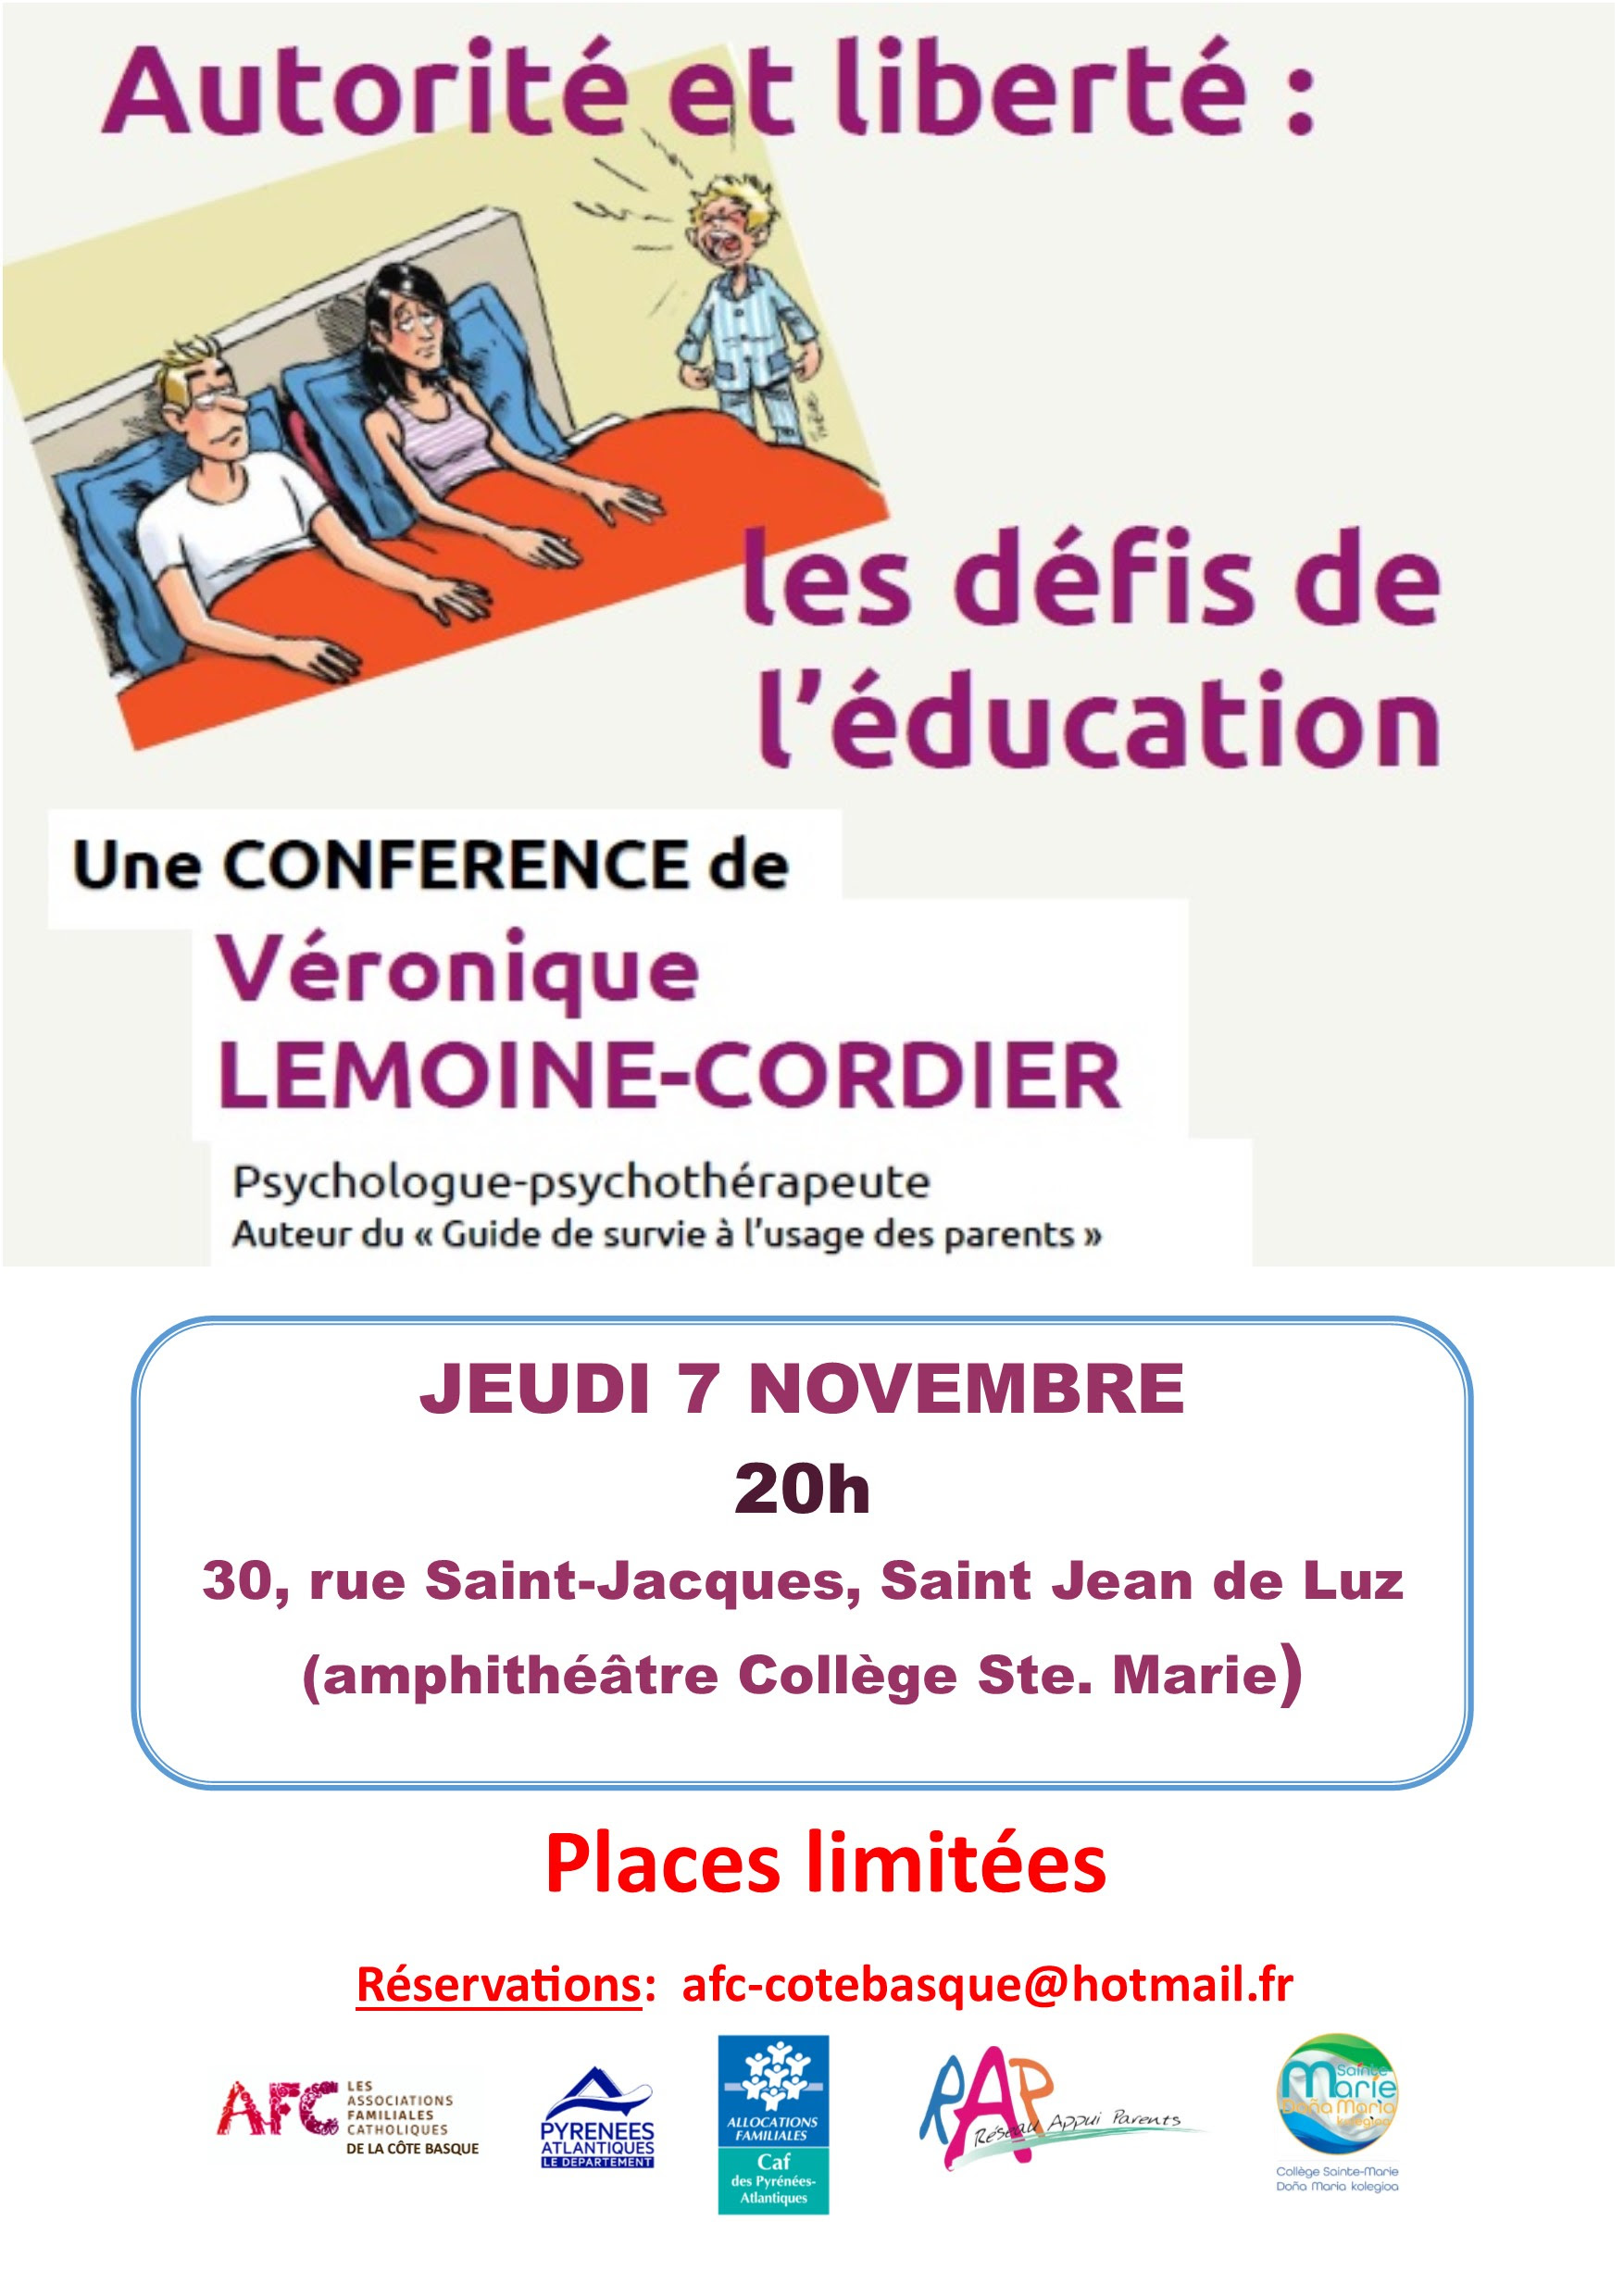 Conférence : « Autorité & liberté : les défis de l’éducation » le 7 novembre 2019 à Saint-Jean-de-Luz (64)